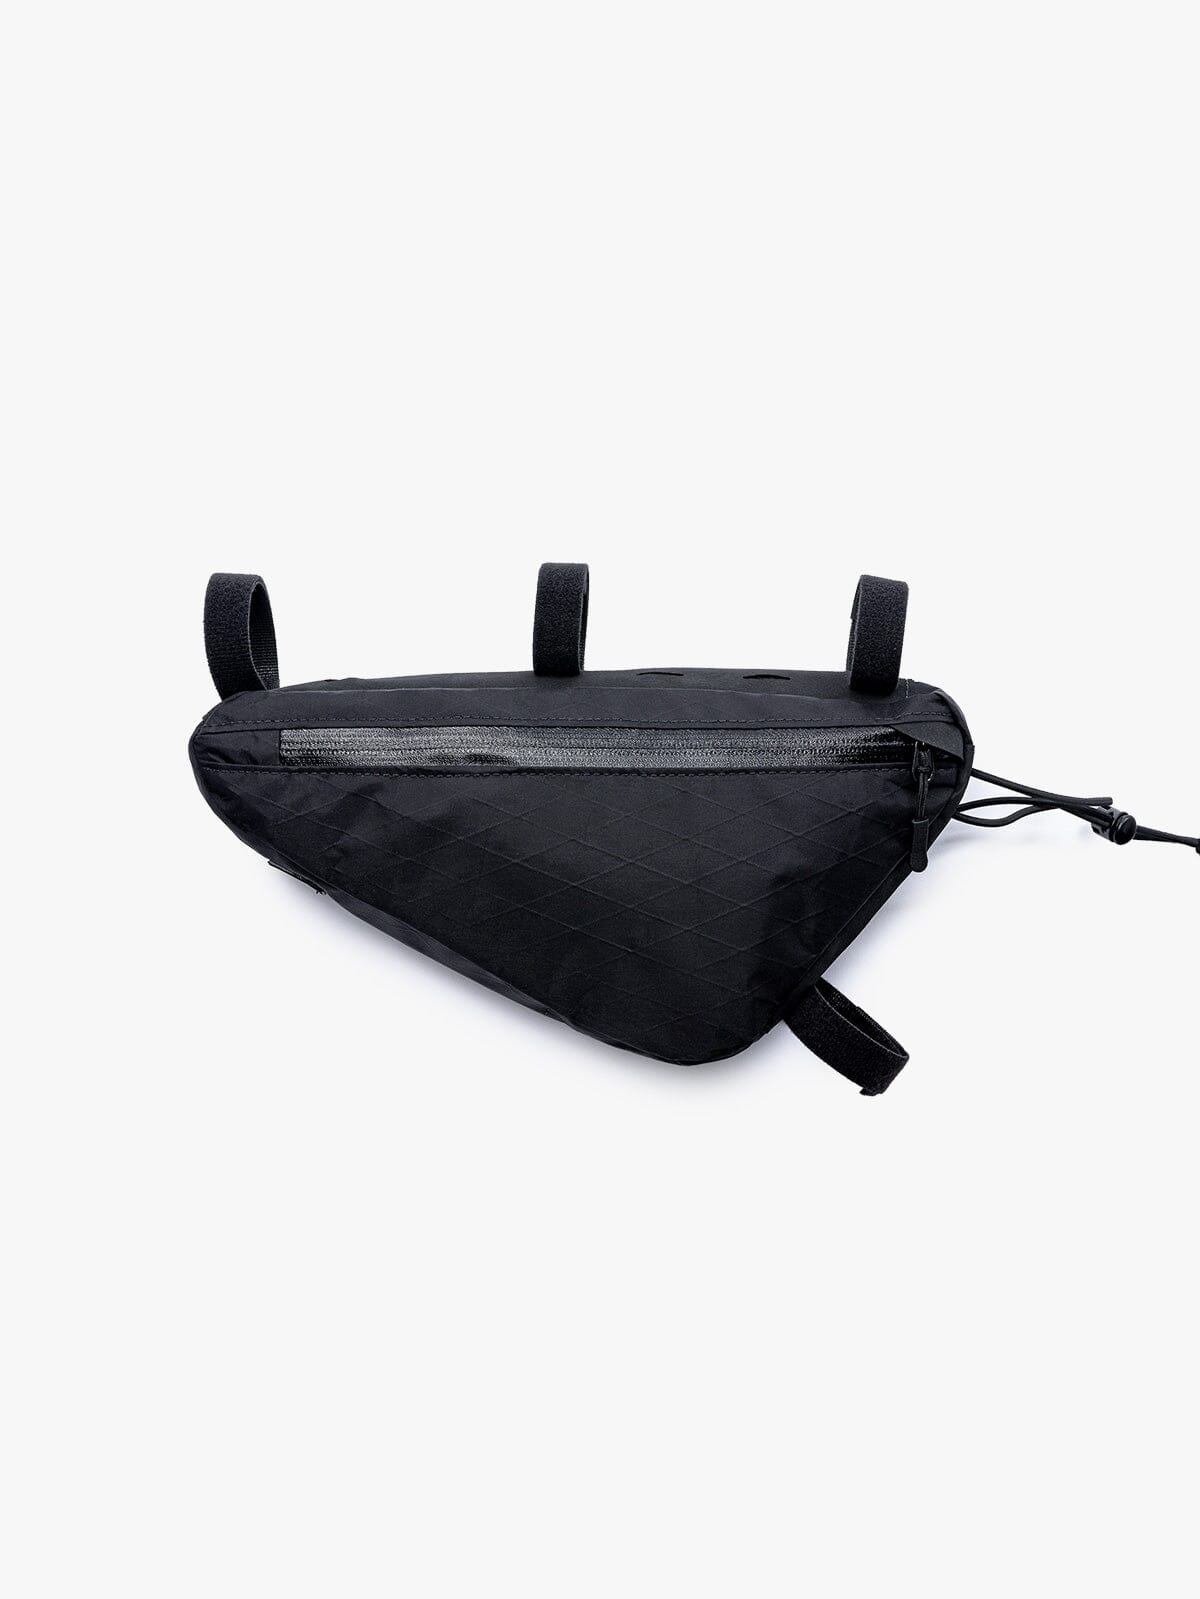 Slice Frame Bag by Mission Workshop - Weerbestendige tassen & technische kleding - San Francisco & Los Angeles - Gemaakt om te weerstaan - Voor altijd gegarandeerd